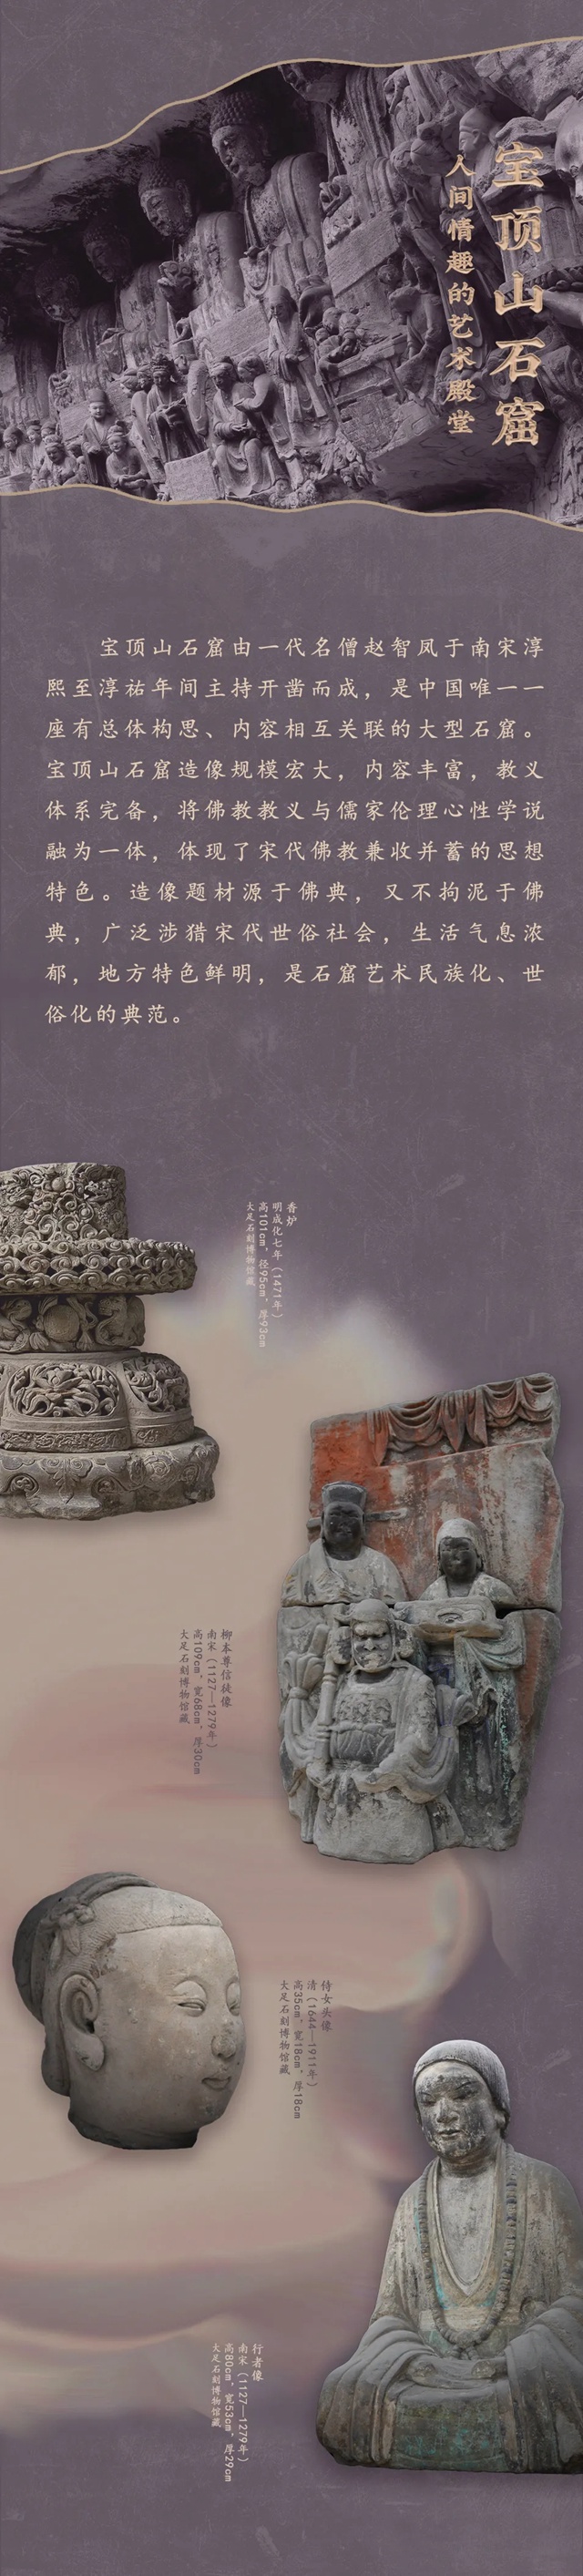 【南山博物馆新展预告】空谷流响——大足石刻的发现与传承